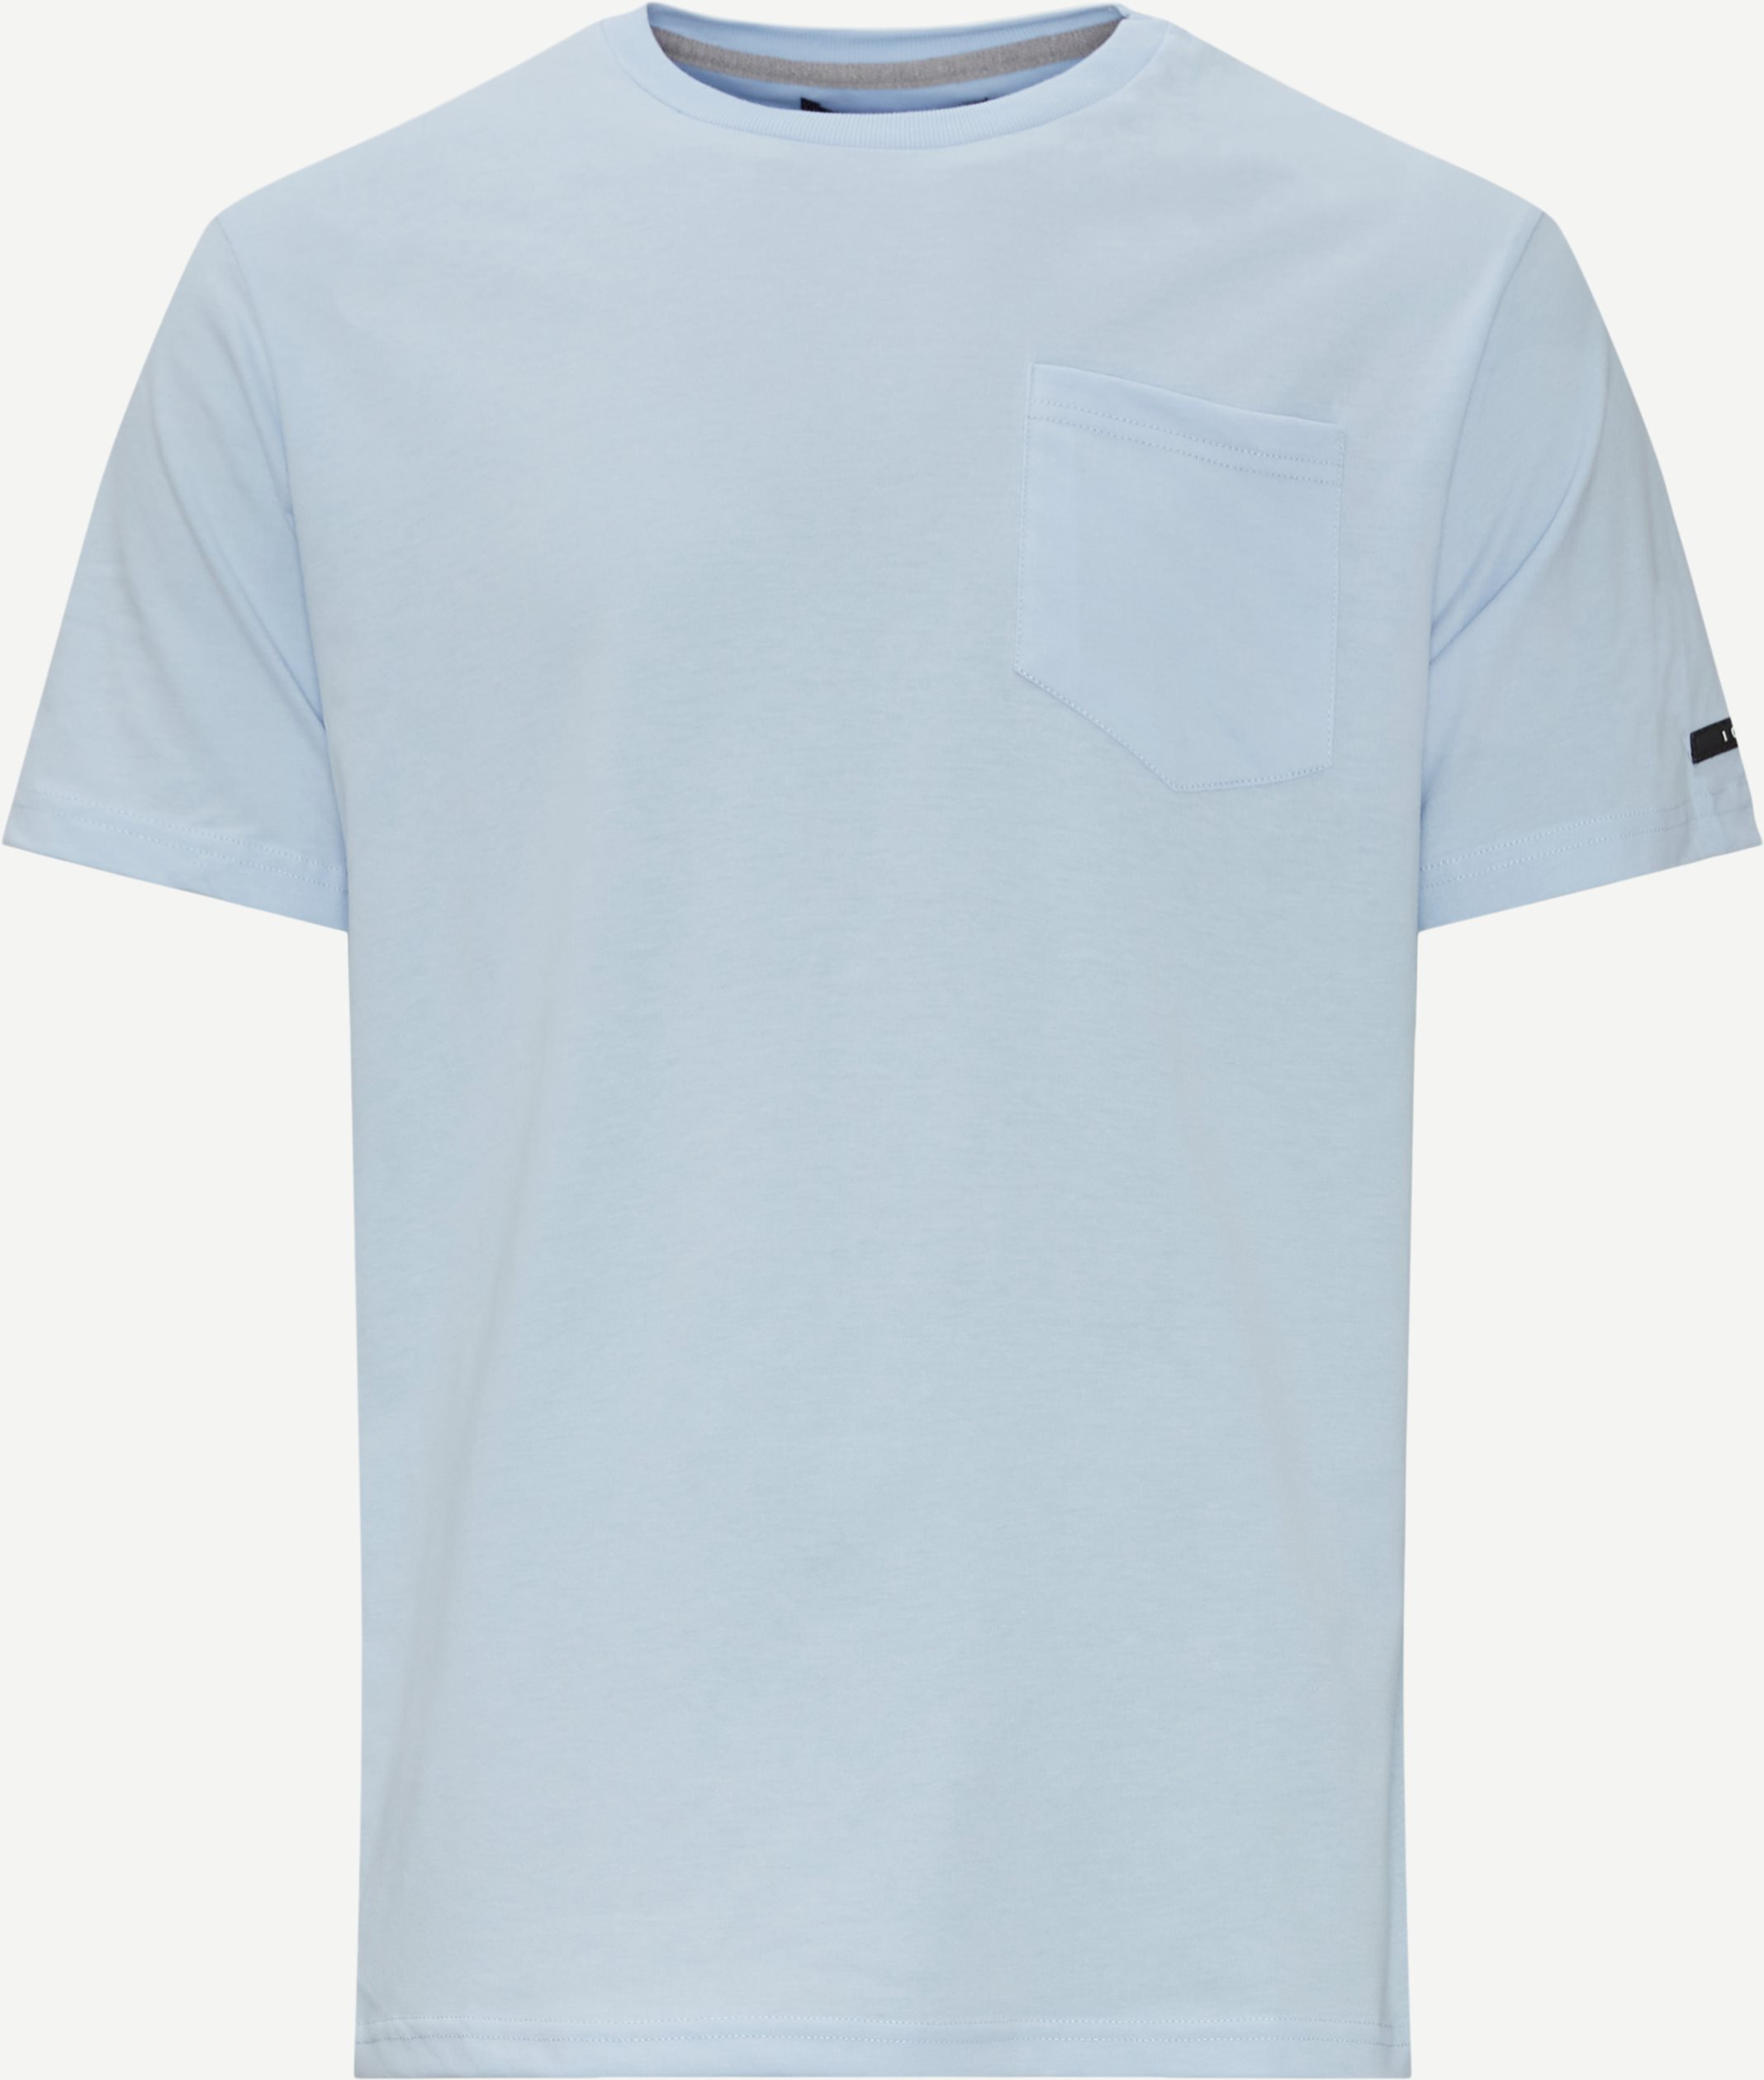 Zeus T-shirt - T-shirts - Regular fit - Blå